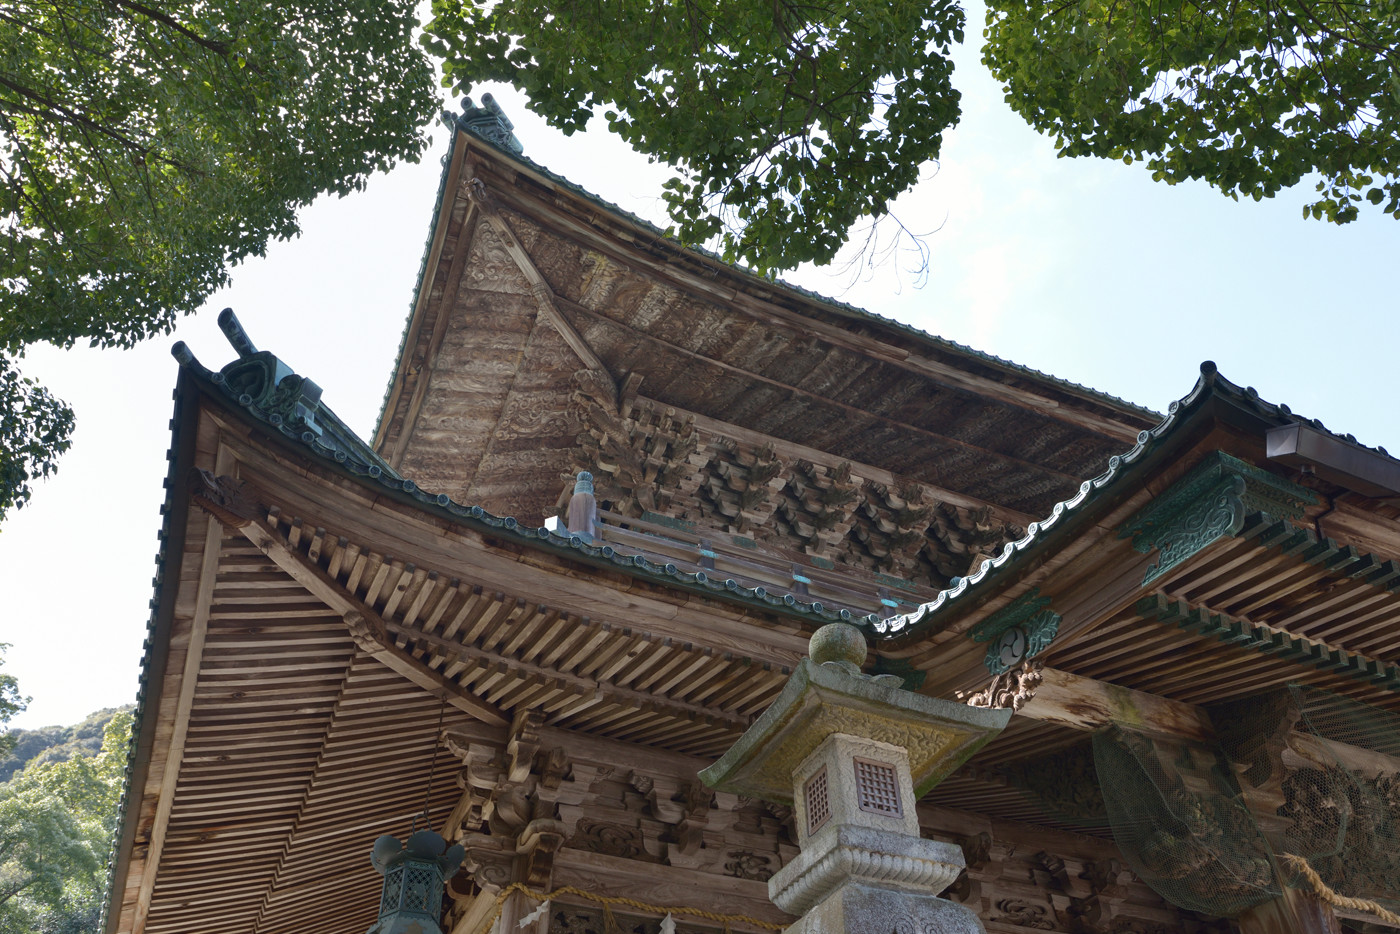 ワイド端の16mmでパースを活かし、手前にある「事比羅神社」と記された古い額の美しい木目を捉えつつ、建物の奥行を感じさせるダイナミックな構図を狙った。